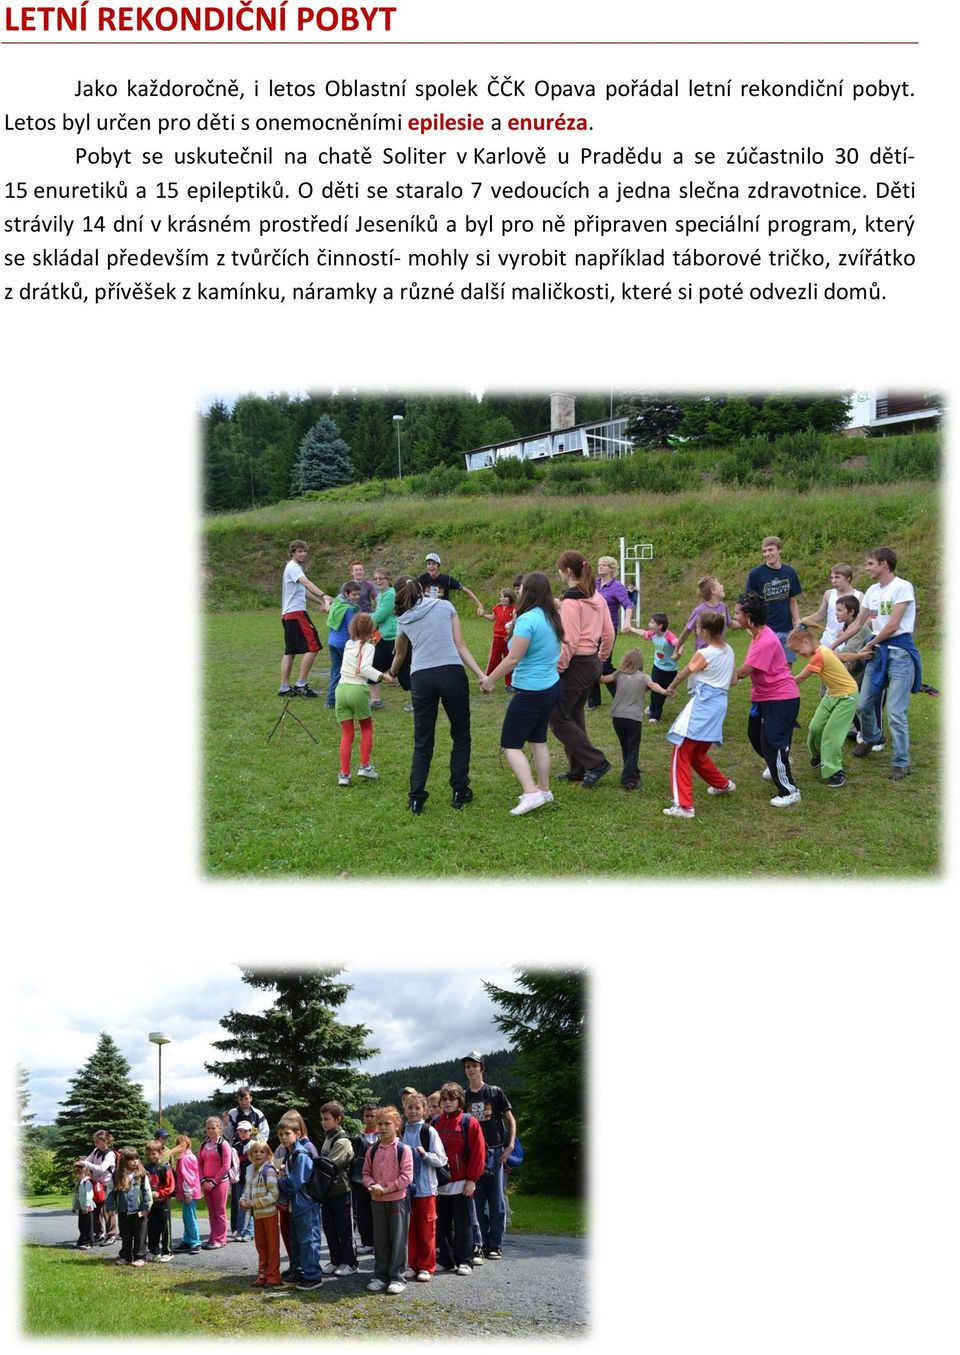 Pobyt se uskutečnil na chatě Soliter v Karlově u Pradědu a se zúčastnilo 30 dětí- 15 enuretiků a 15 epileptiků.